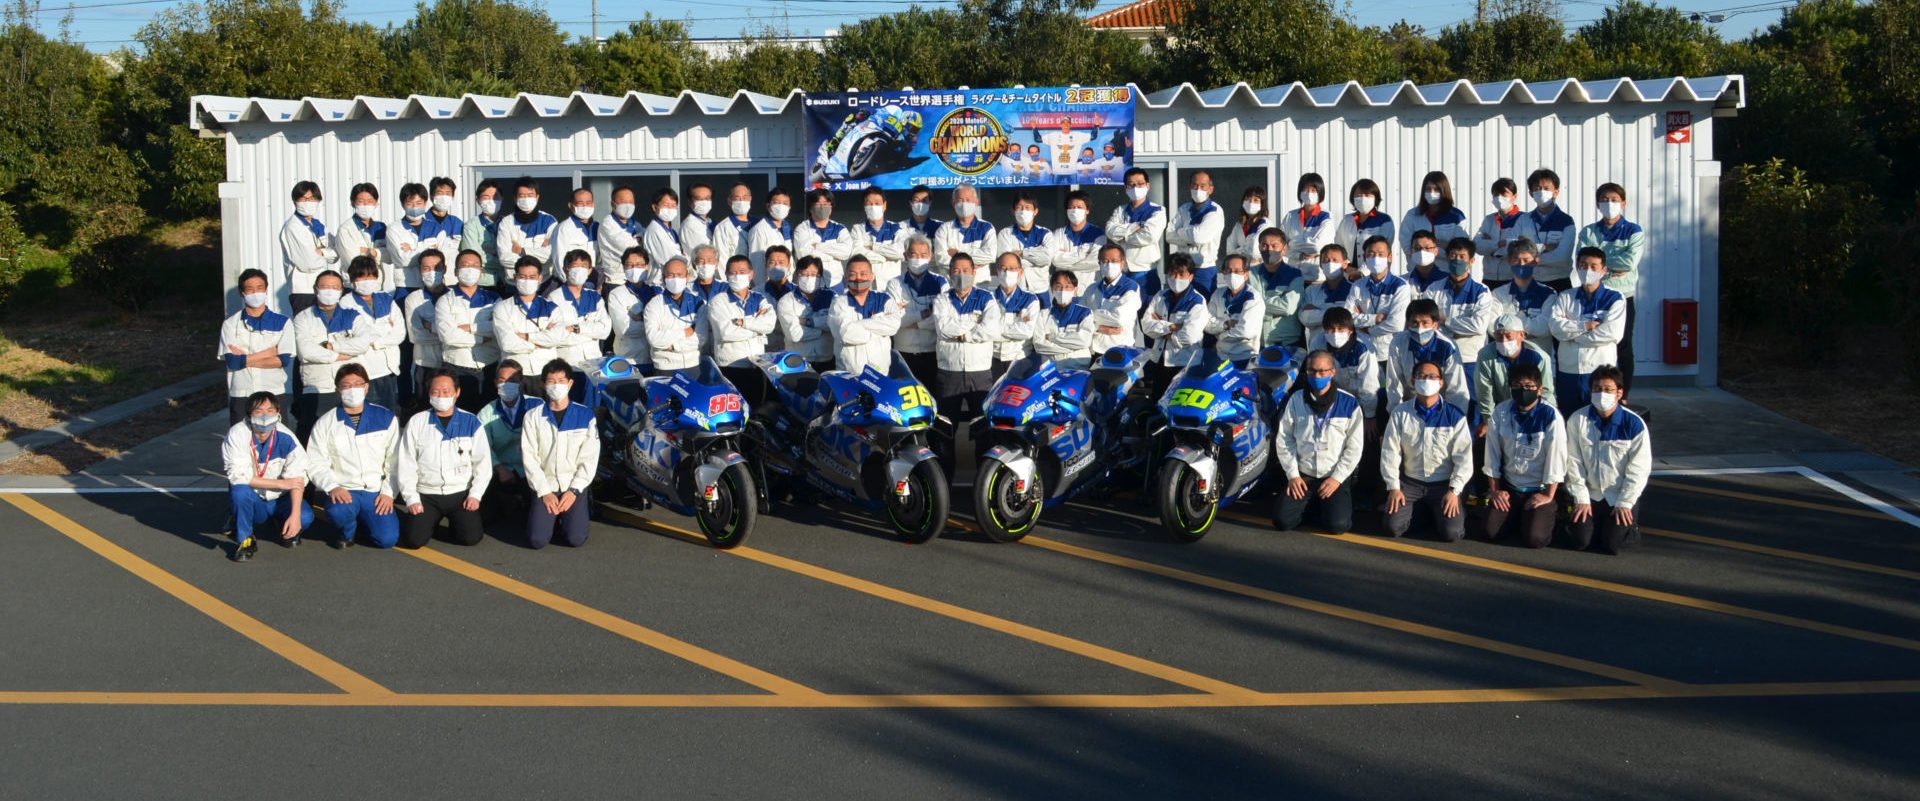 A temporada excepcional da Suzuki valeu muito a pena uma foto de grupo, e no banco o que é mais...